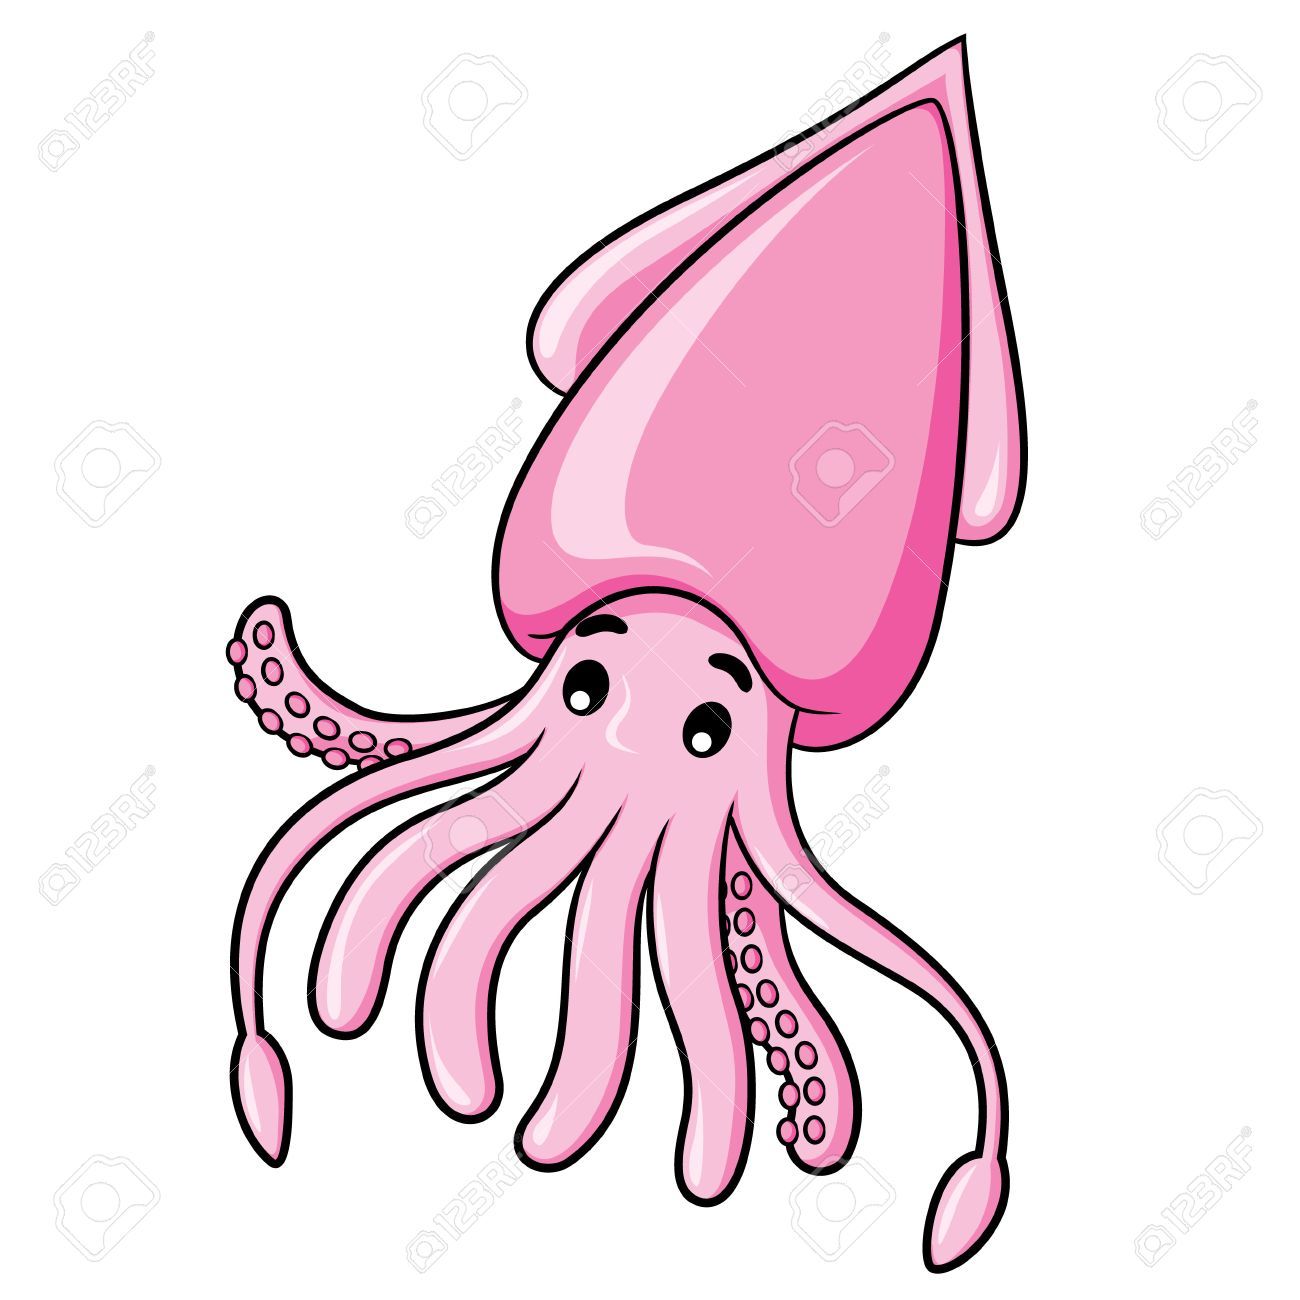 Cute squid clipart 4 » Clipart Portal.